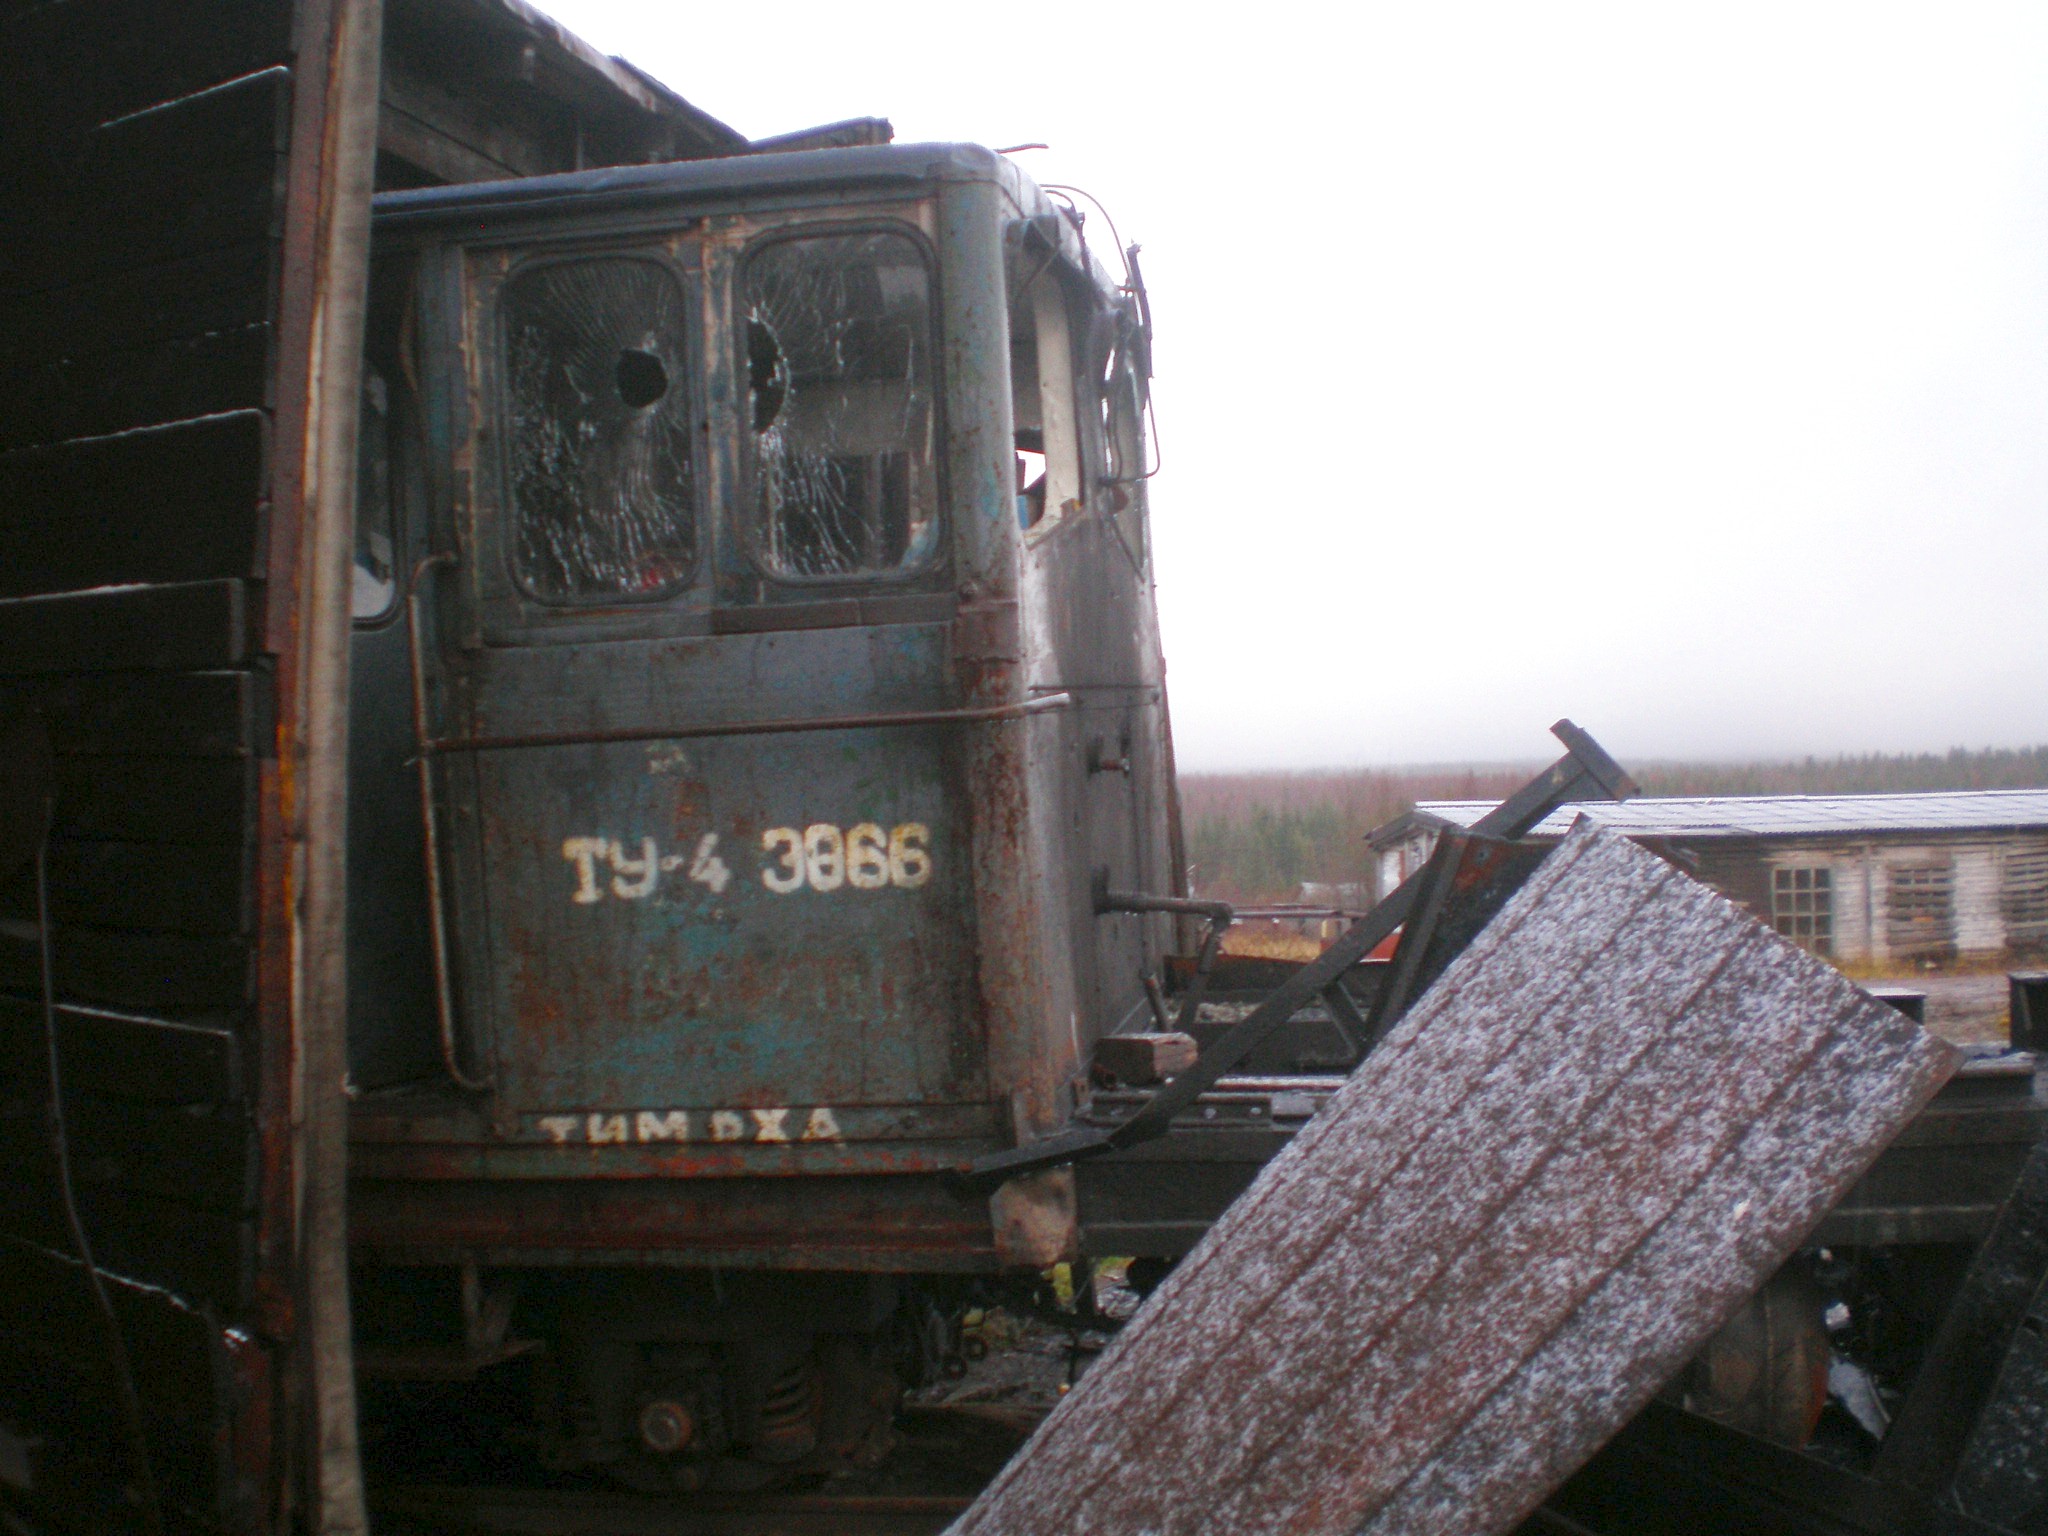 Луньевская узкоколейная железная дорога  —  фотографии, сделанные в 2008 году (часть 2)